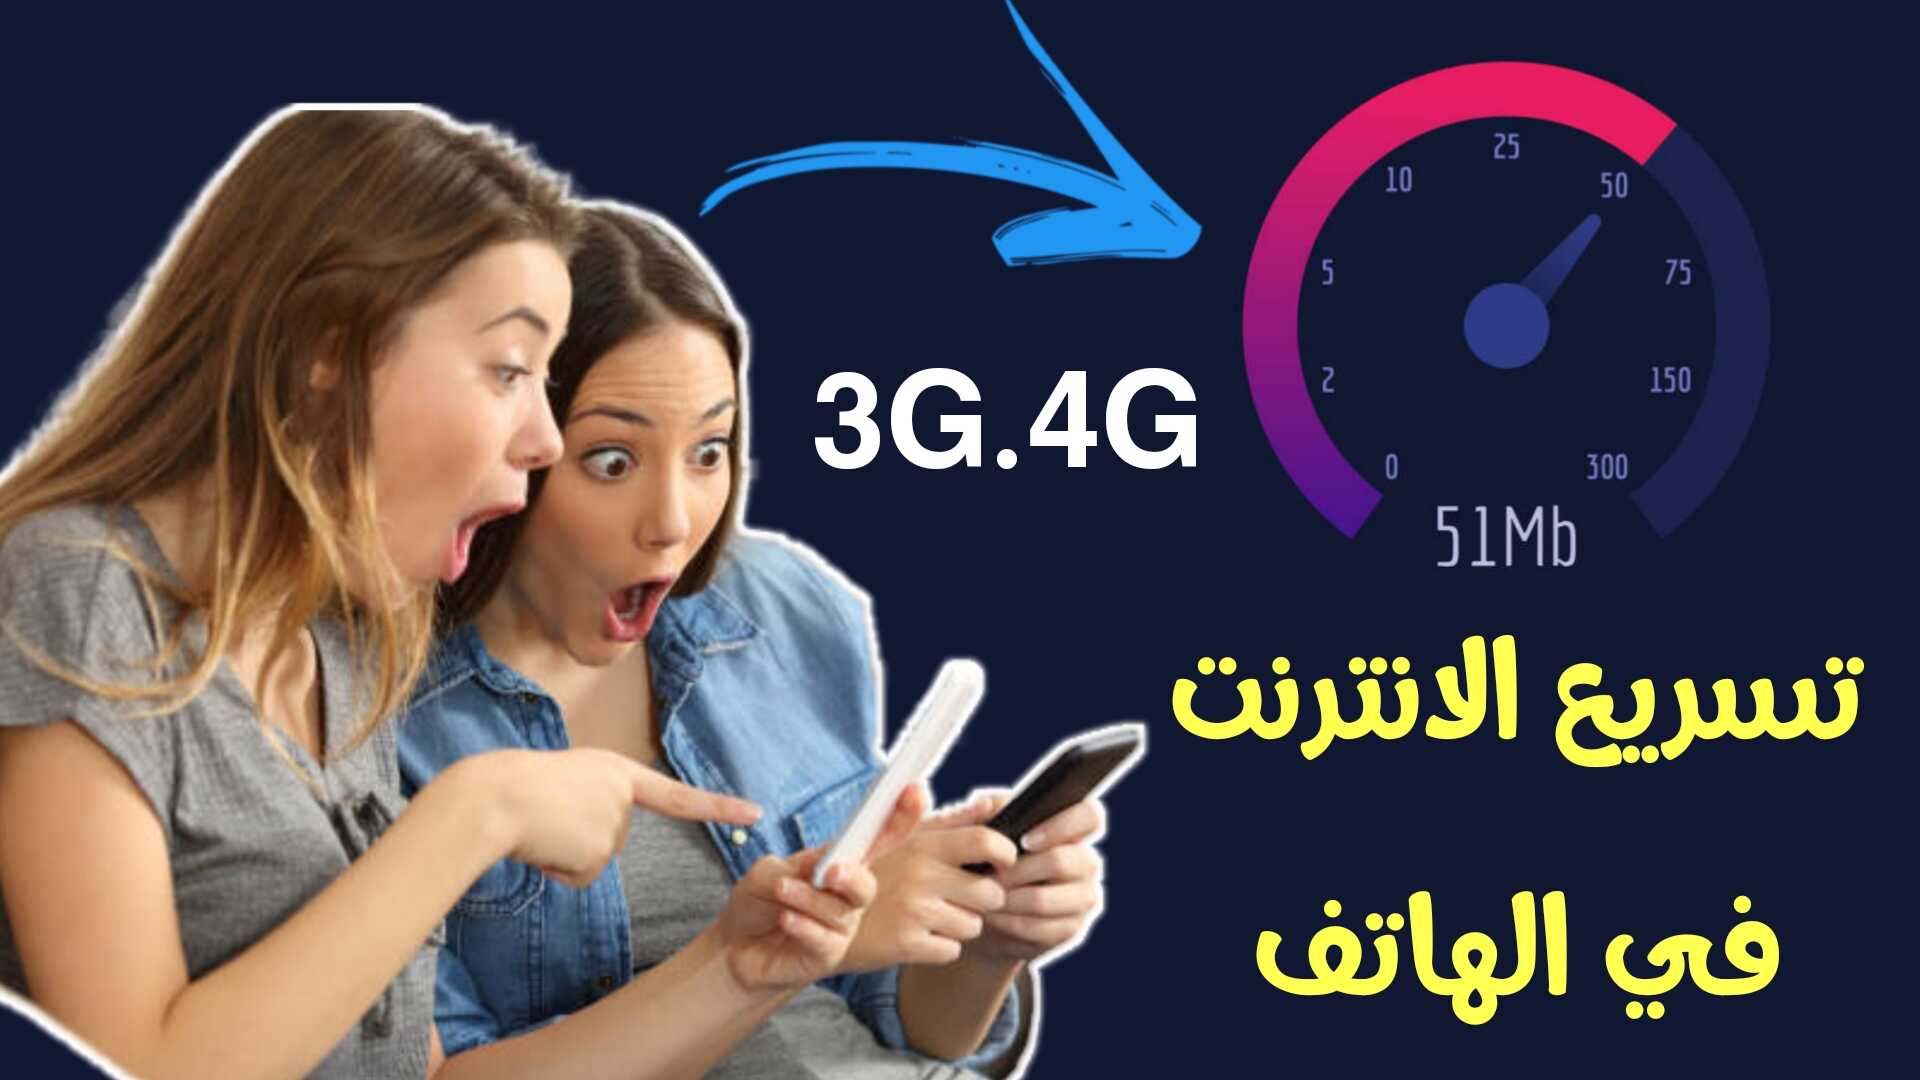 تسريع الانترنت في الهاتف وتوفير بيانات 3G.4G المحدودة